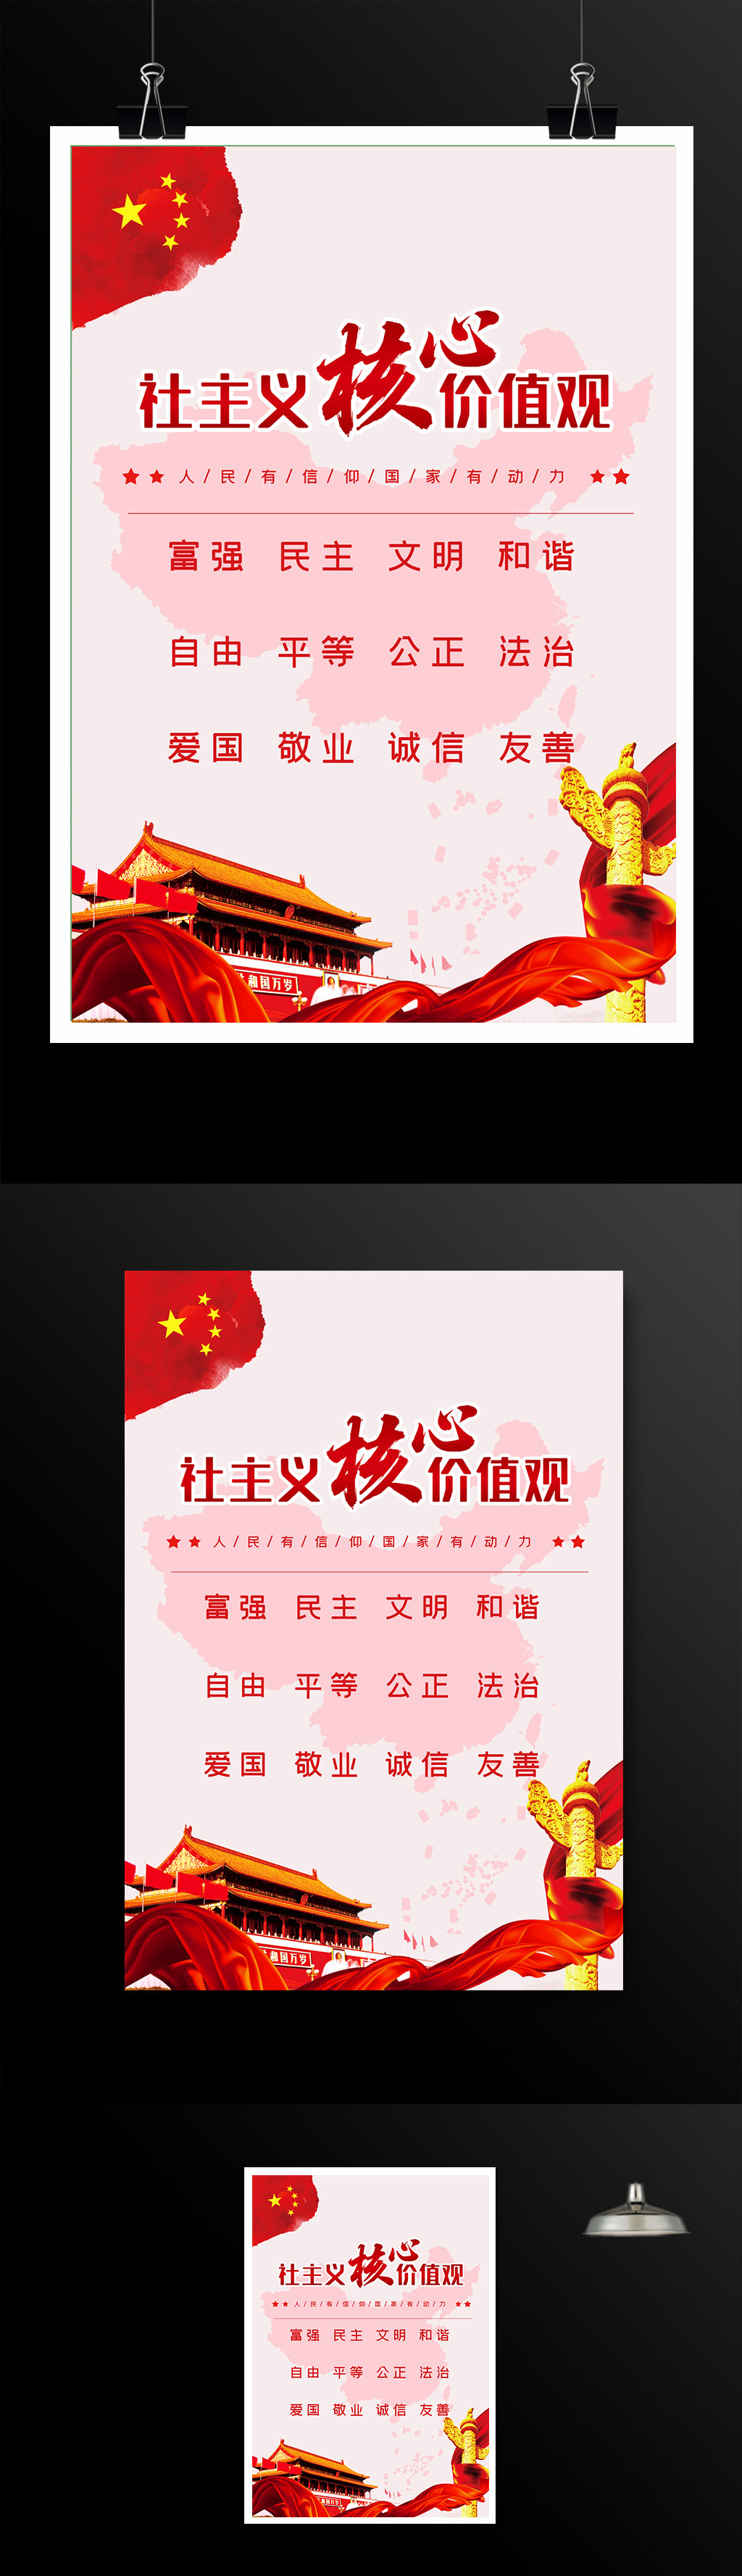 中国社会主义核心价值观海报模板